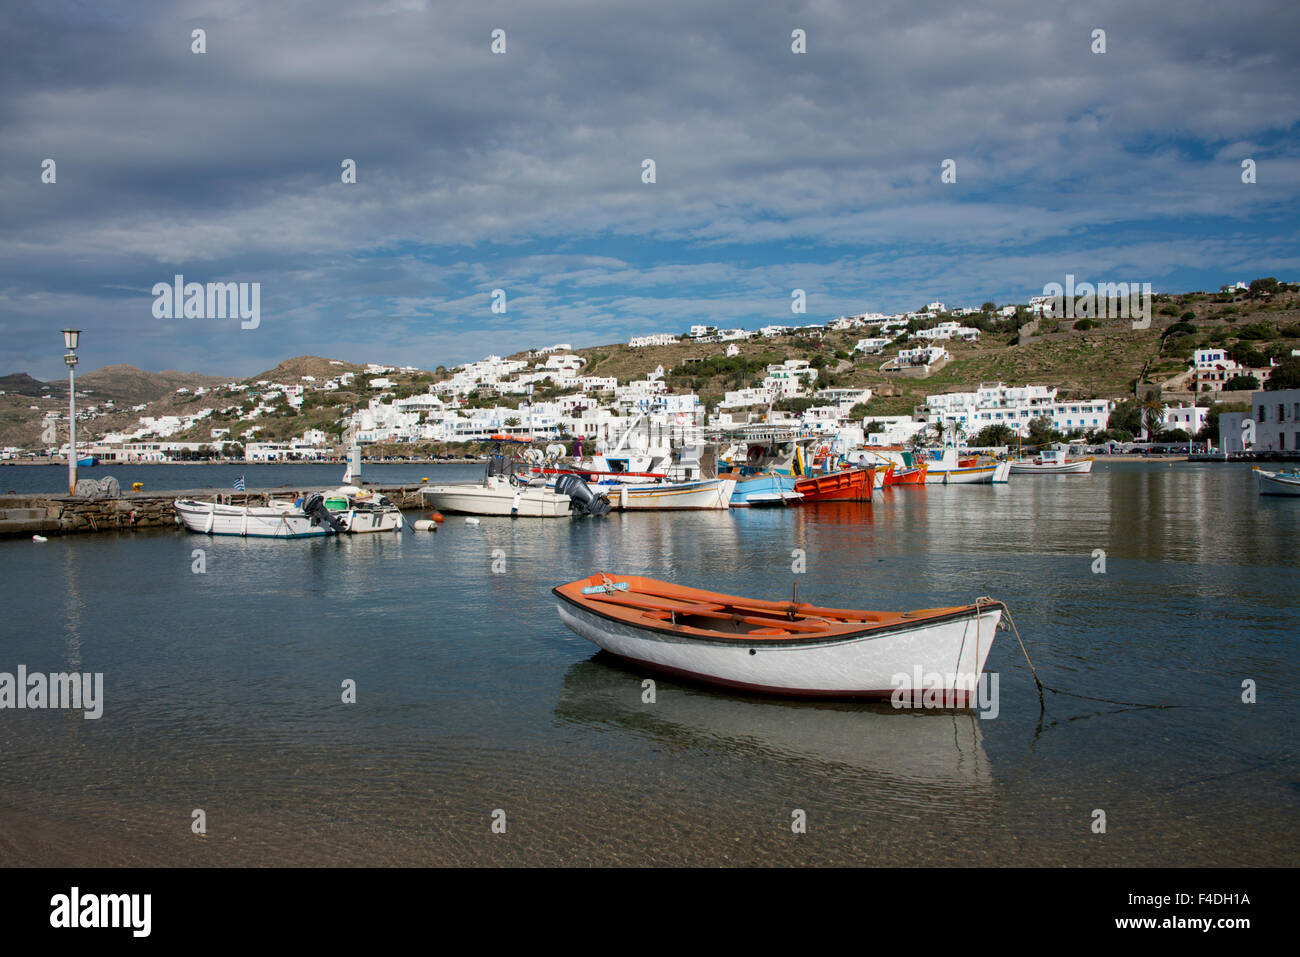 Grèce, les Cyclades, Mykonos, Hora. Port et le quartier du port avec bateaux de pêche grec. Campagne de l'île au loin. Tailles disponibles (grand format). Banque D'Images